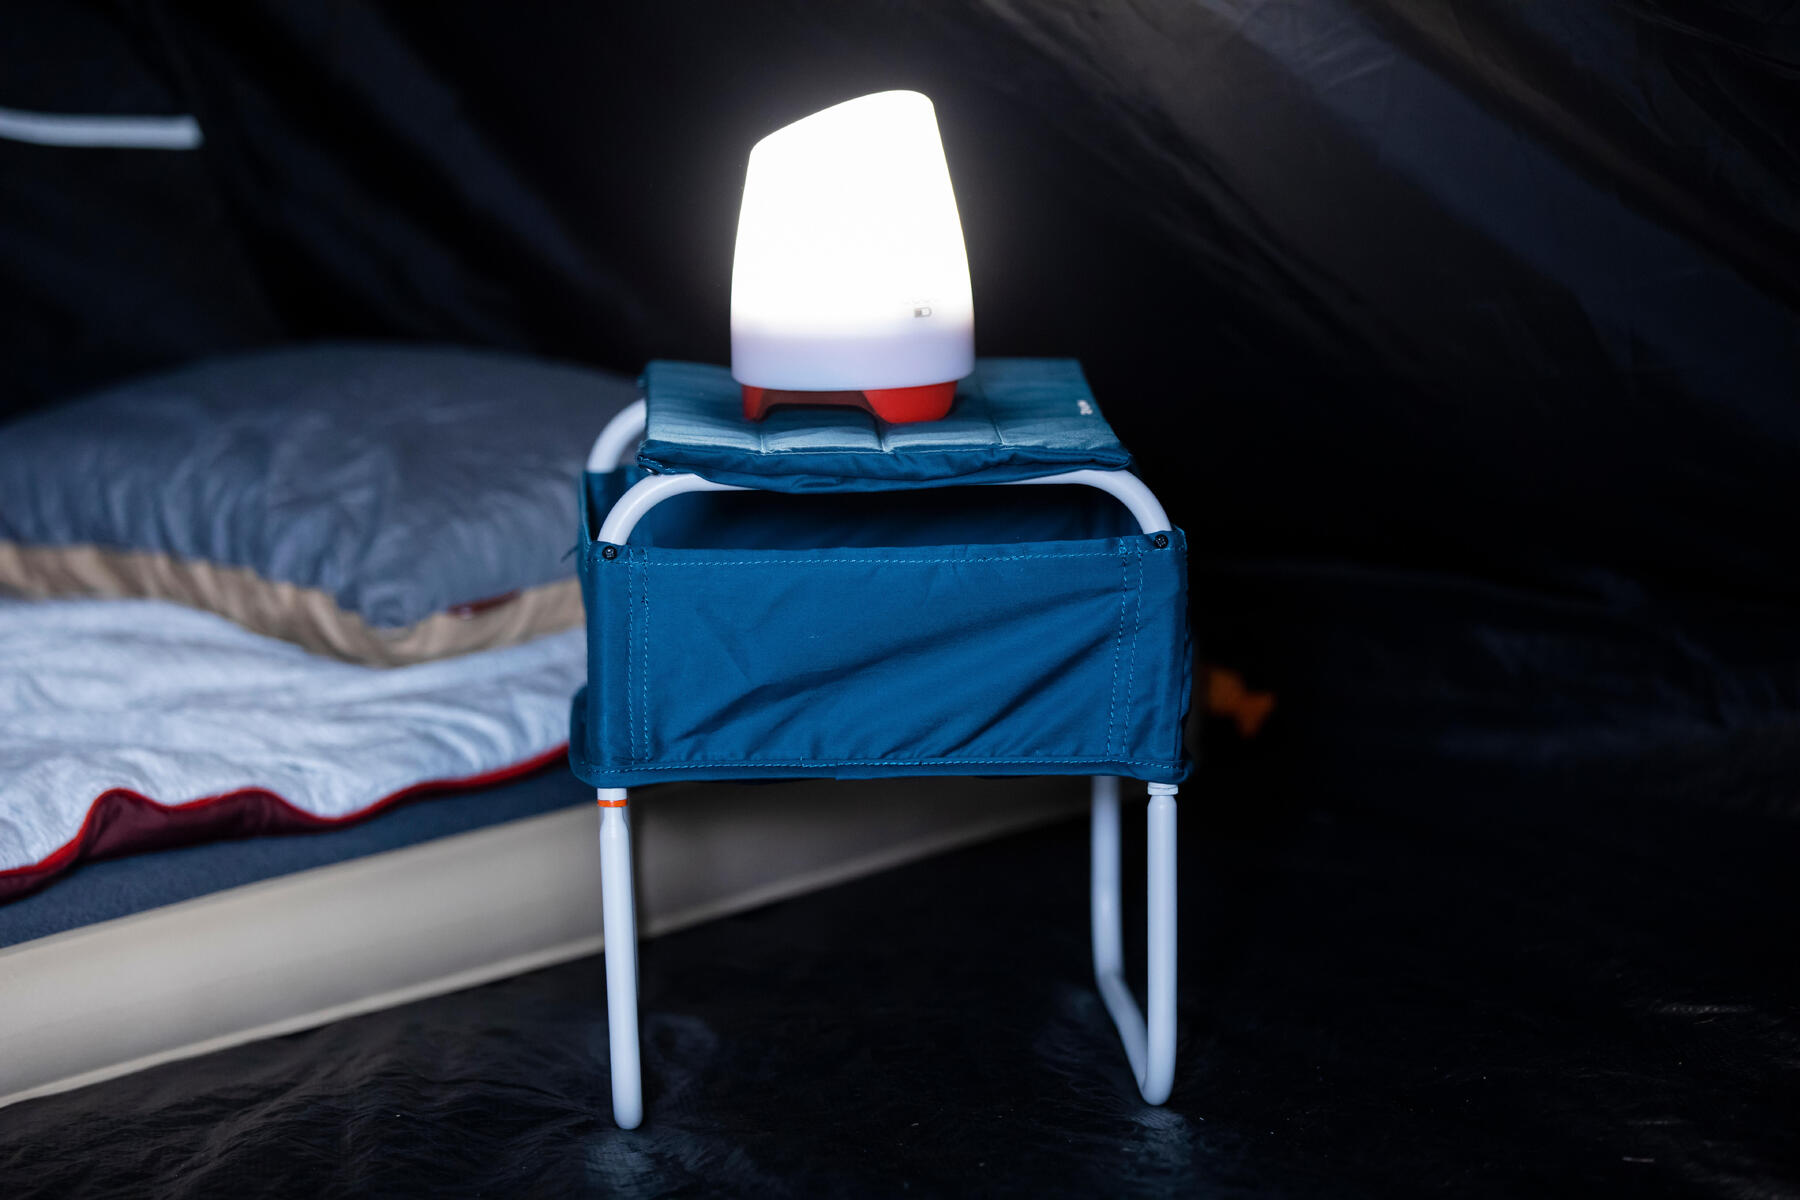 Campinglampe steht auf einem kleinen Tisch neben der Luftmatratze.